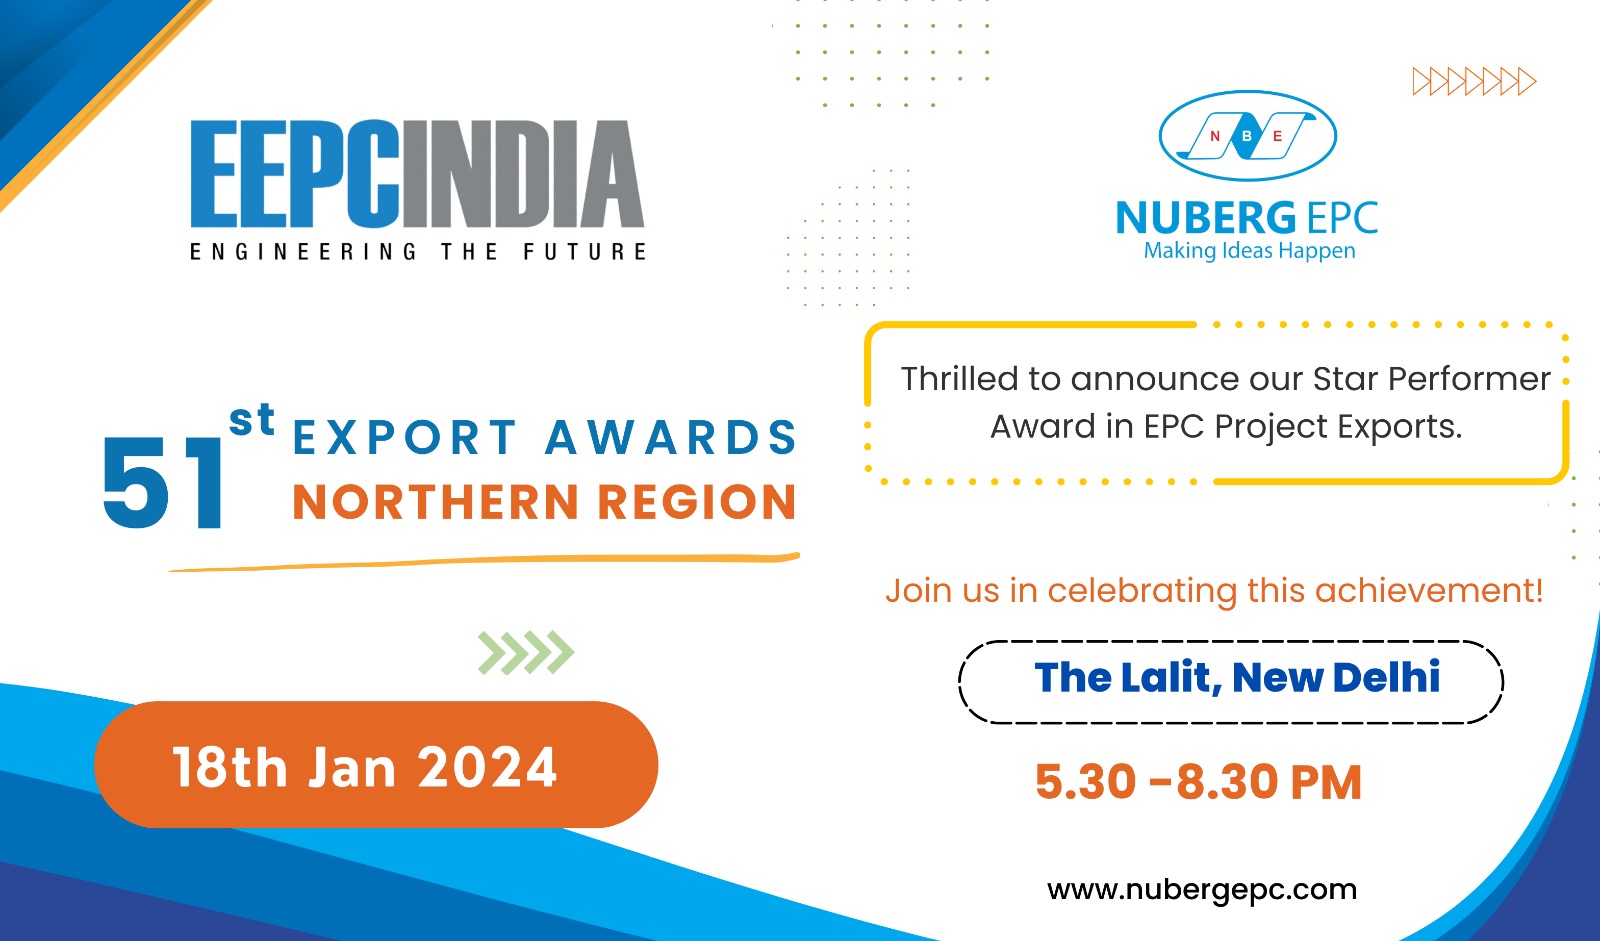 EEPC India, Export Awards, New Delhi